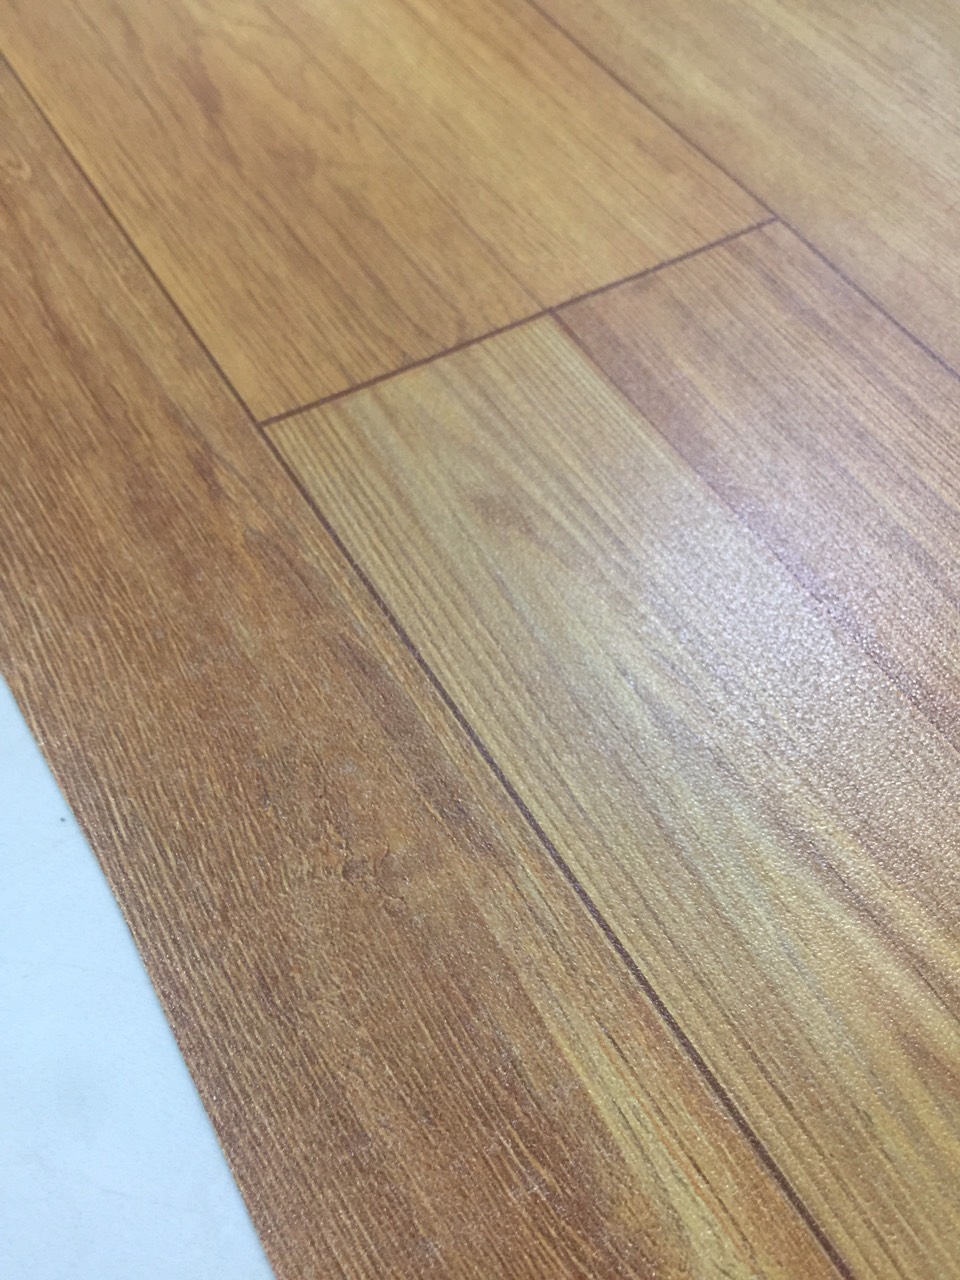 Thảm nhựa trải sàn simili vân gỗ nâu - bề mặt nhám rõ vân gỗ